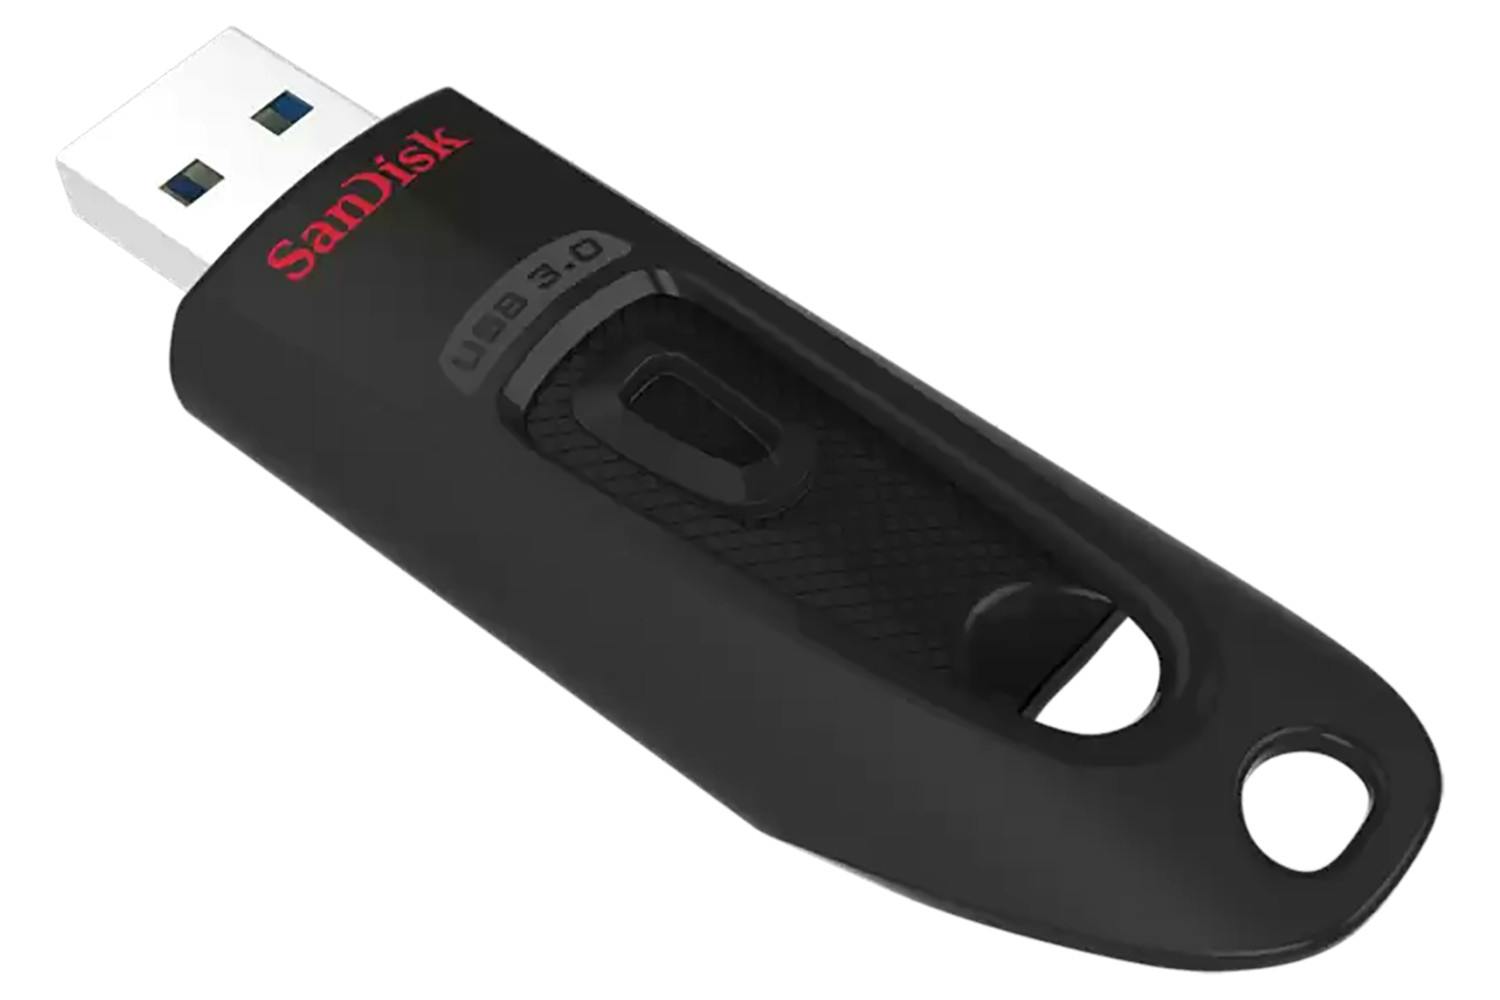 SanDisk Ultra USB 3.0 Flash Drive | 64GB